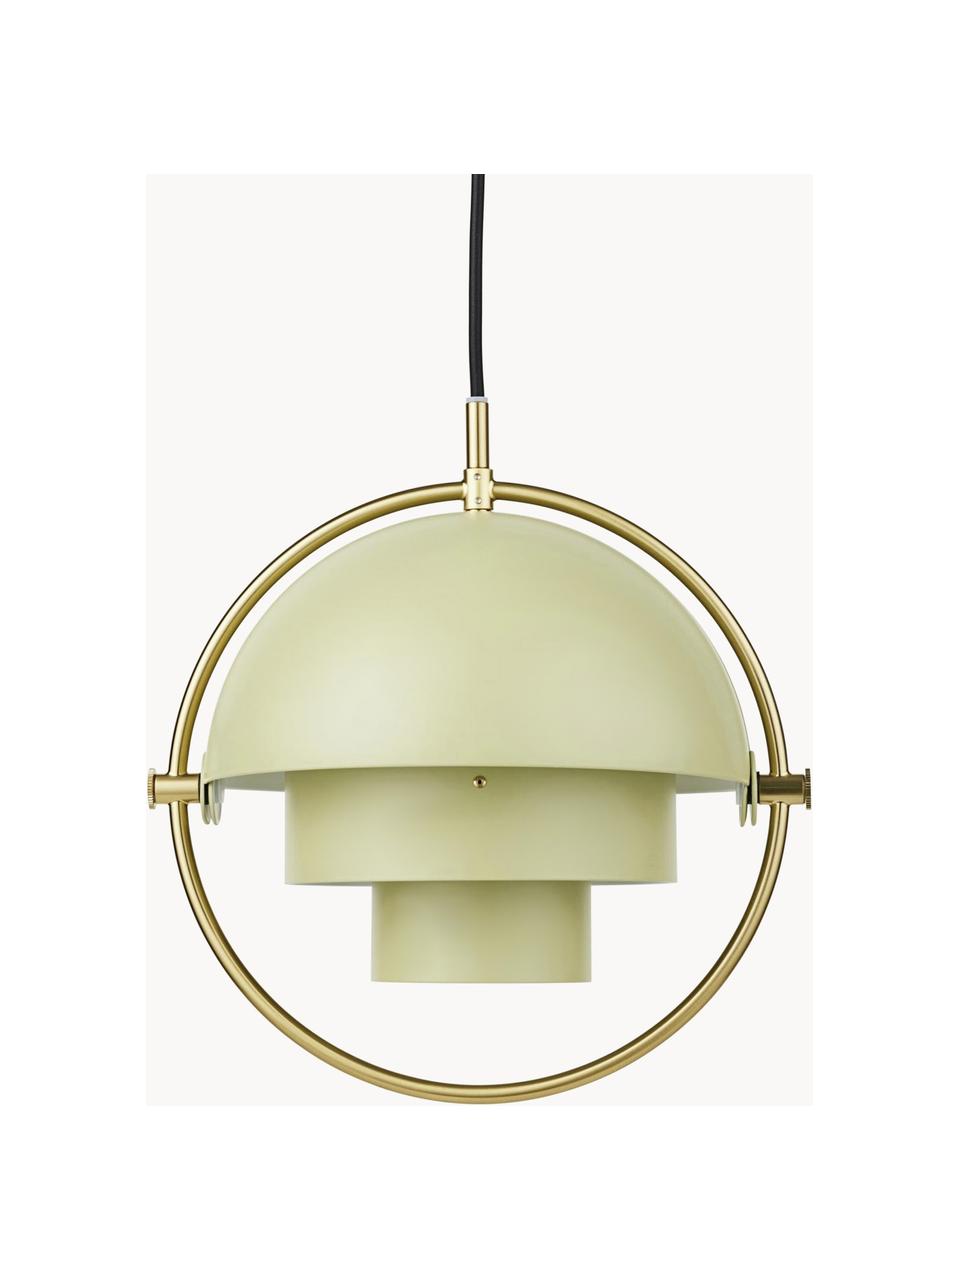 Lámpara de techo ajustable Multi-Lite, Lámpara: aluminio con pintura en p, Cable: plástico, Verde claro mate, dorado brillante, Ø 23 x Al 28 cm